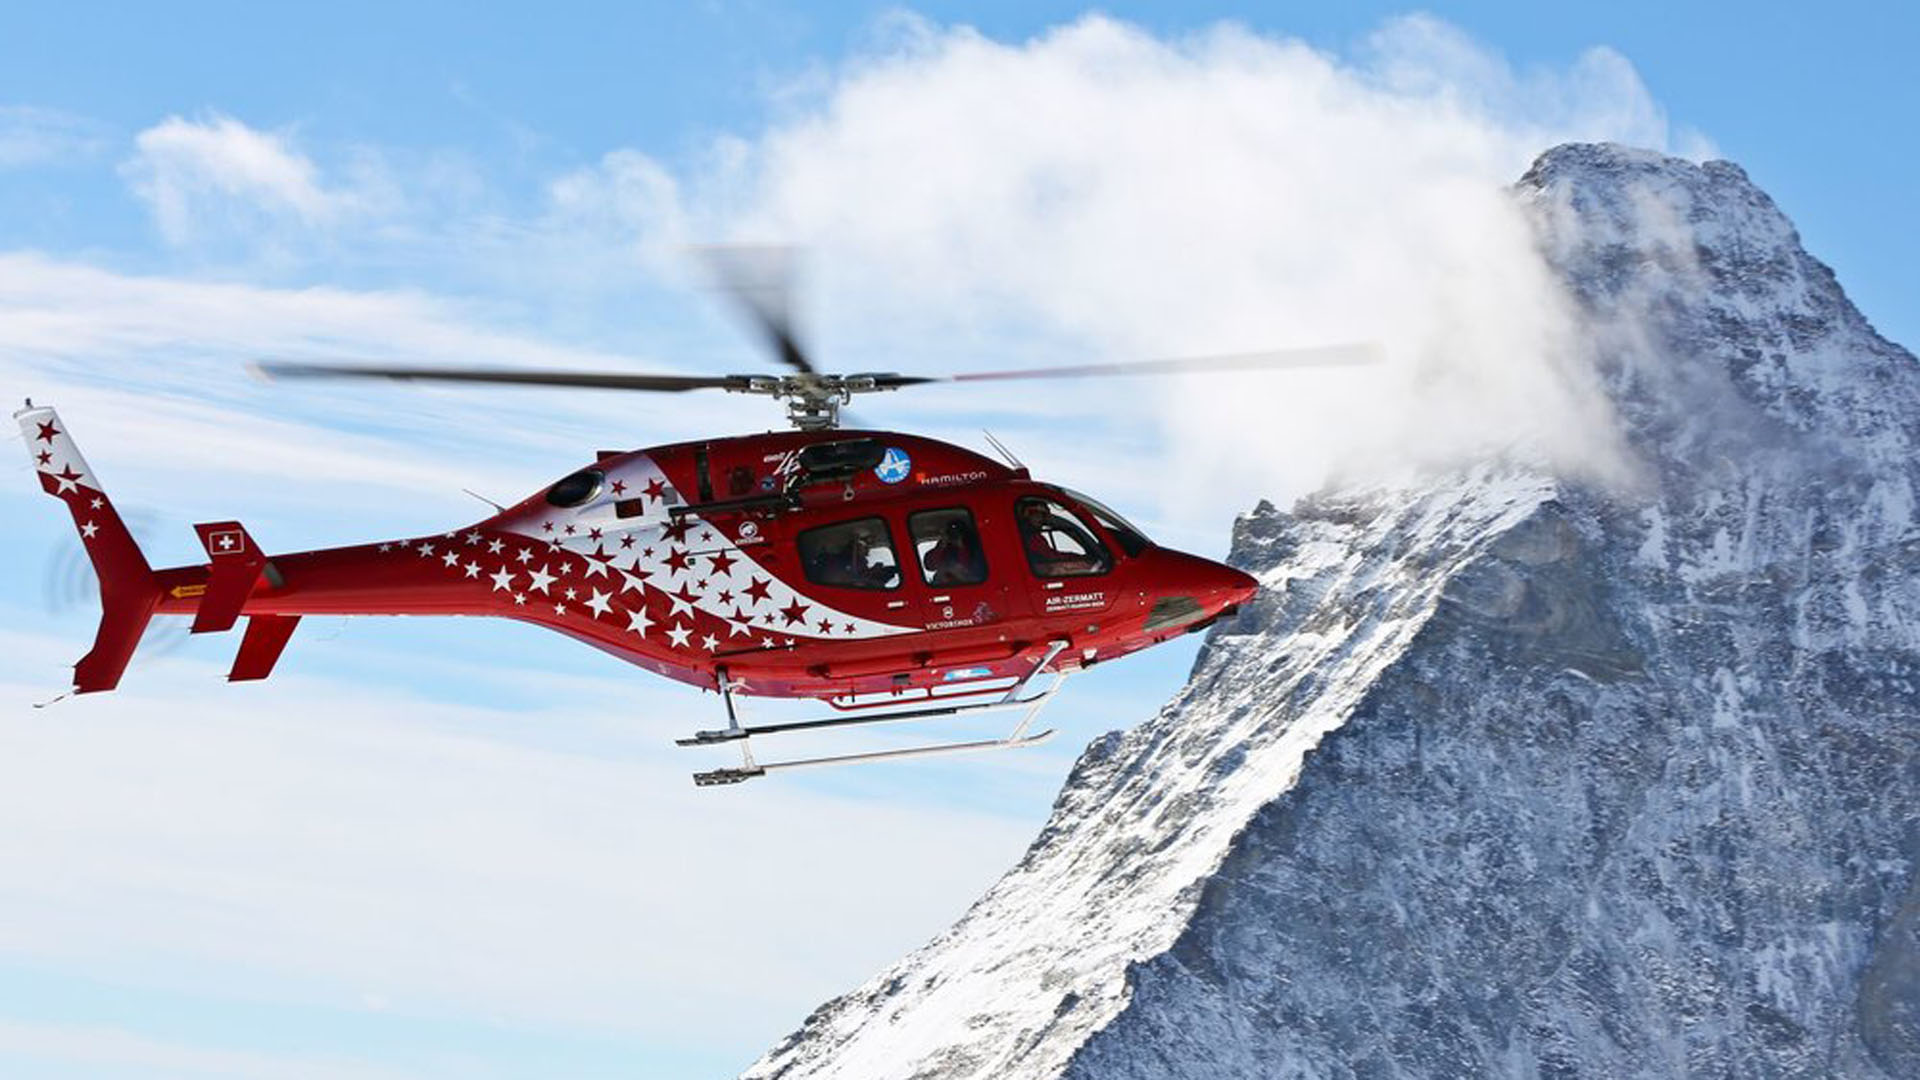 Společnost Bell oznámila, že podepsala smlouvu na dodávku třetího vrtulníku Bell 429 v konfiguraci HEMS pro Air Zermatt